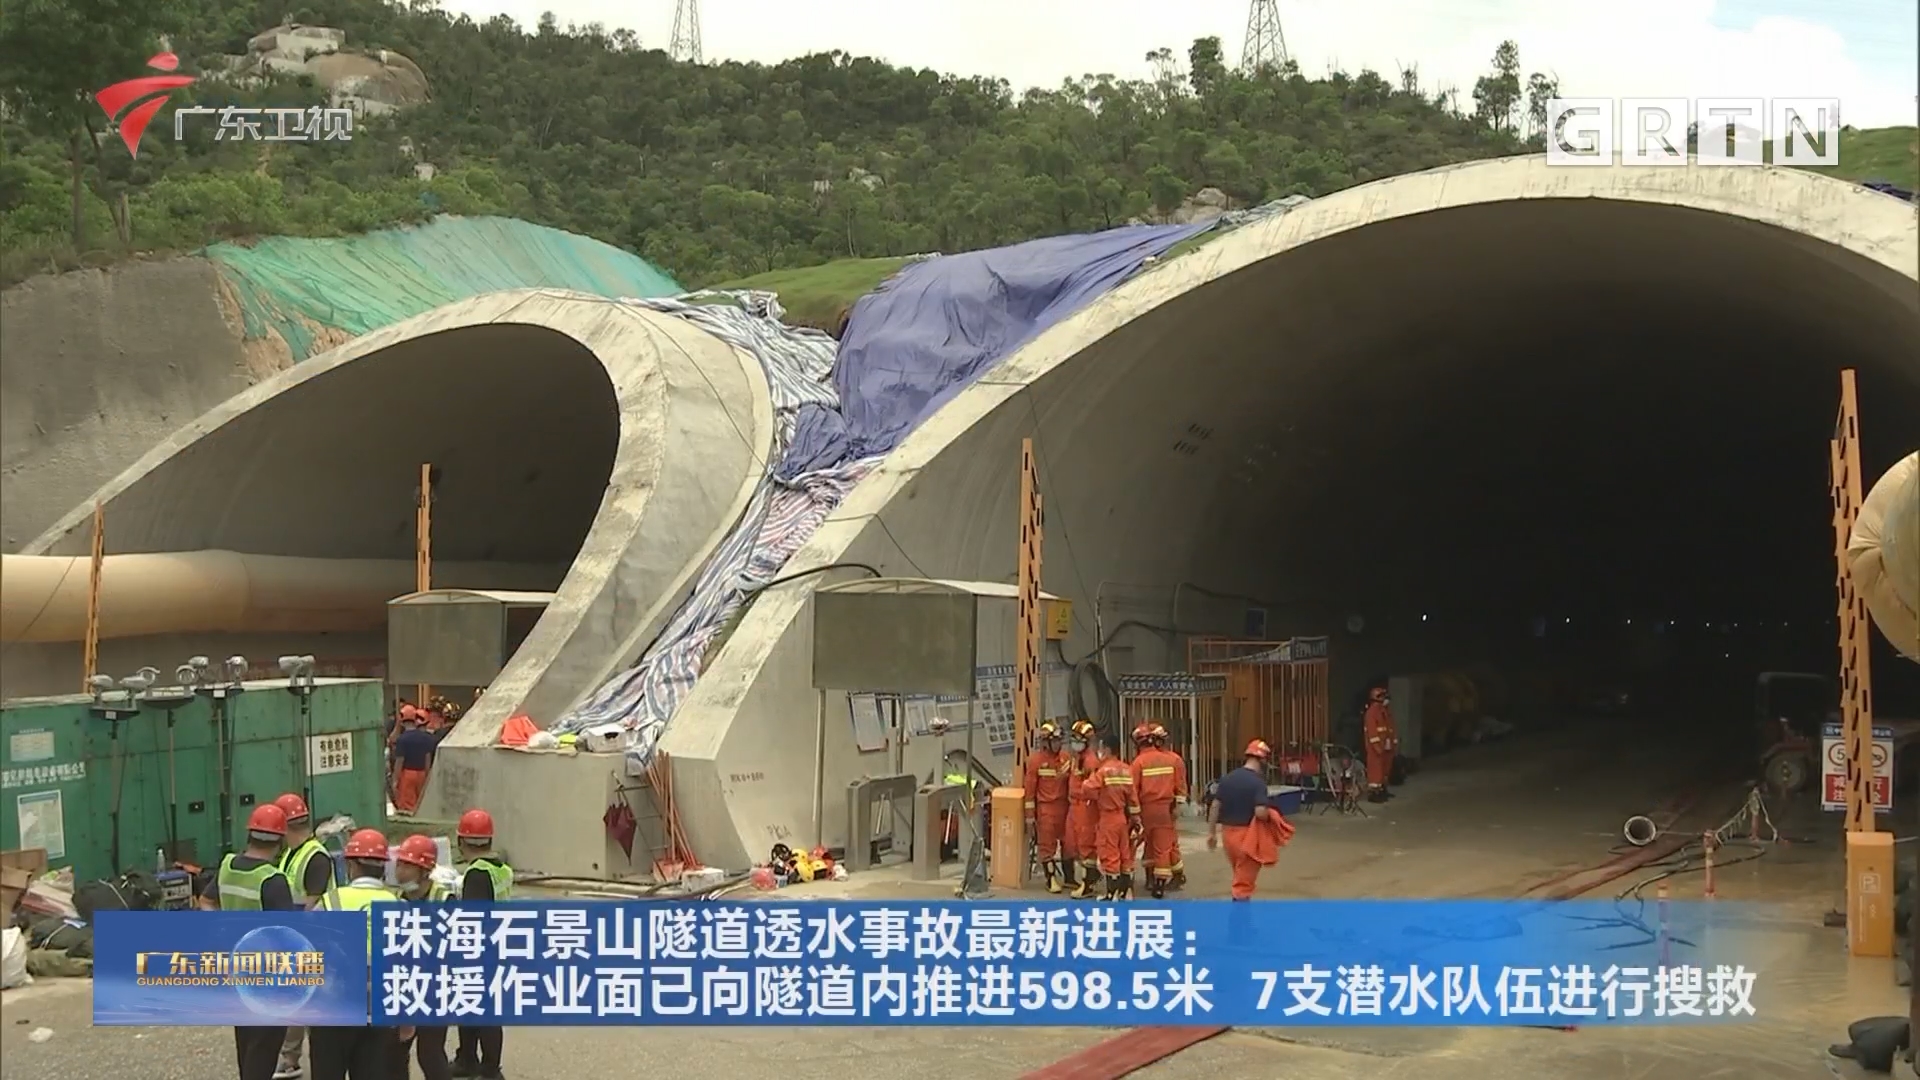 珠海石景山隧道透水事故最新进展:救援作业面已向隧道内推进598